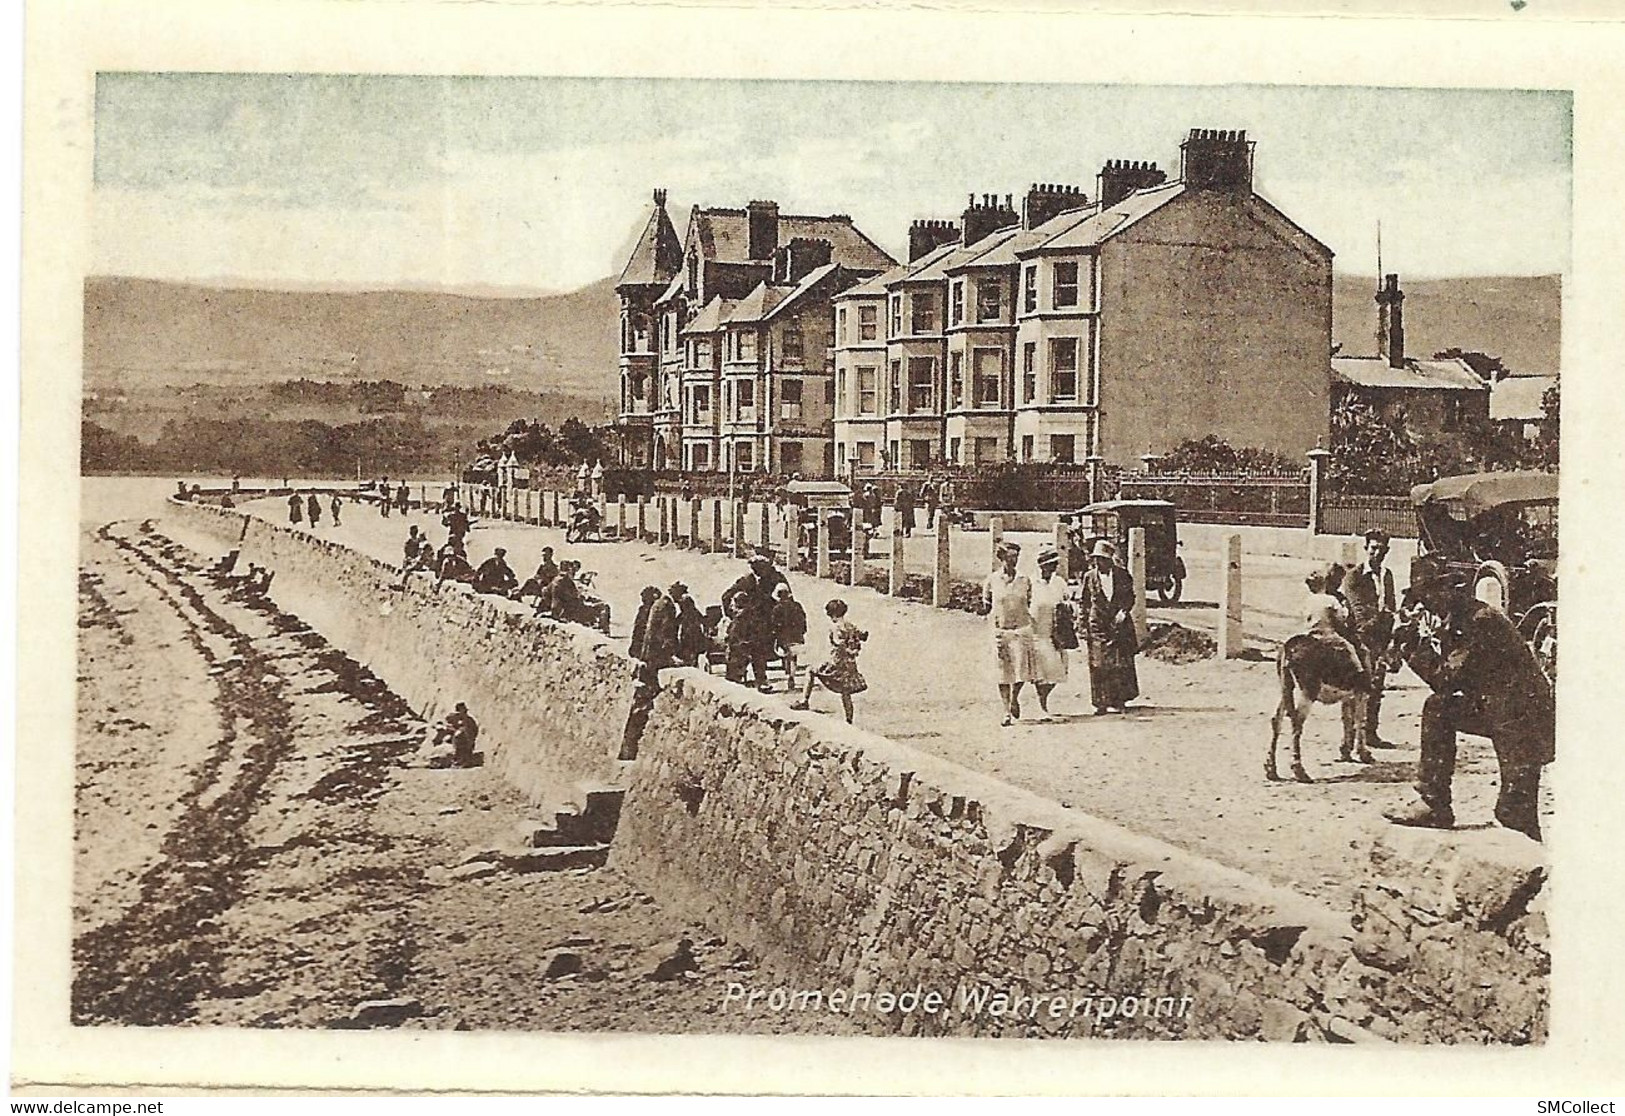 Irlande du Nord. Warrenpoint, album miniature à poster de 12 vues format 111 x 75 mm environ, voir description (5657)